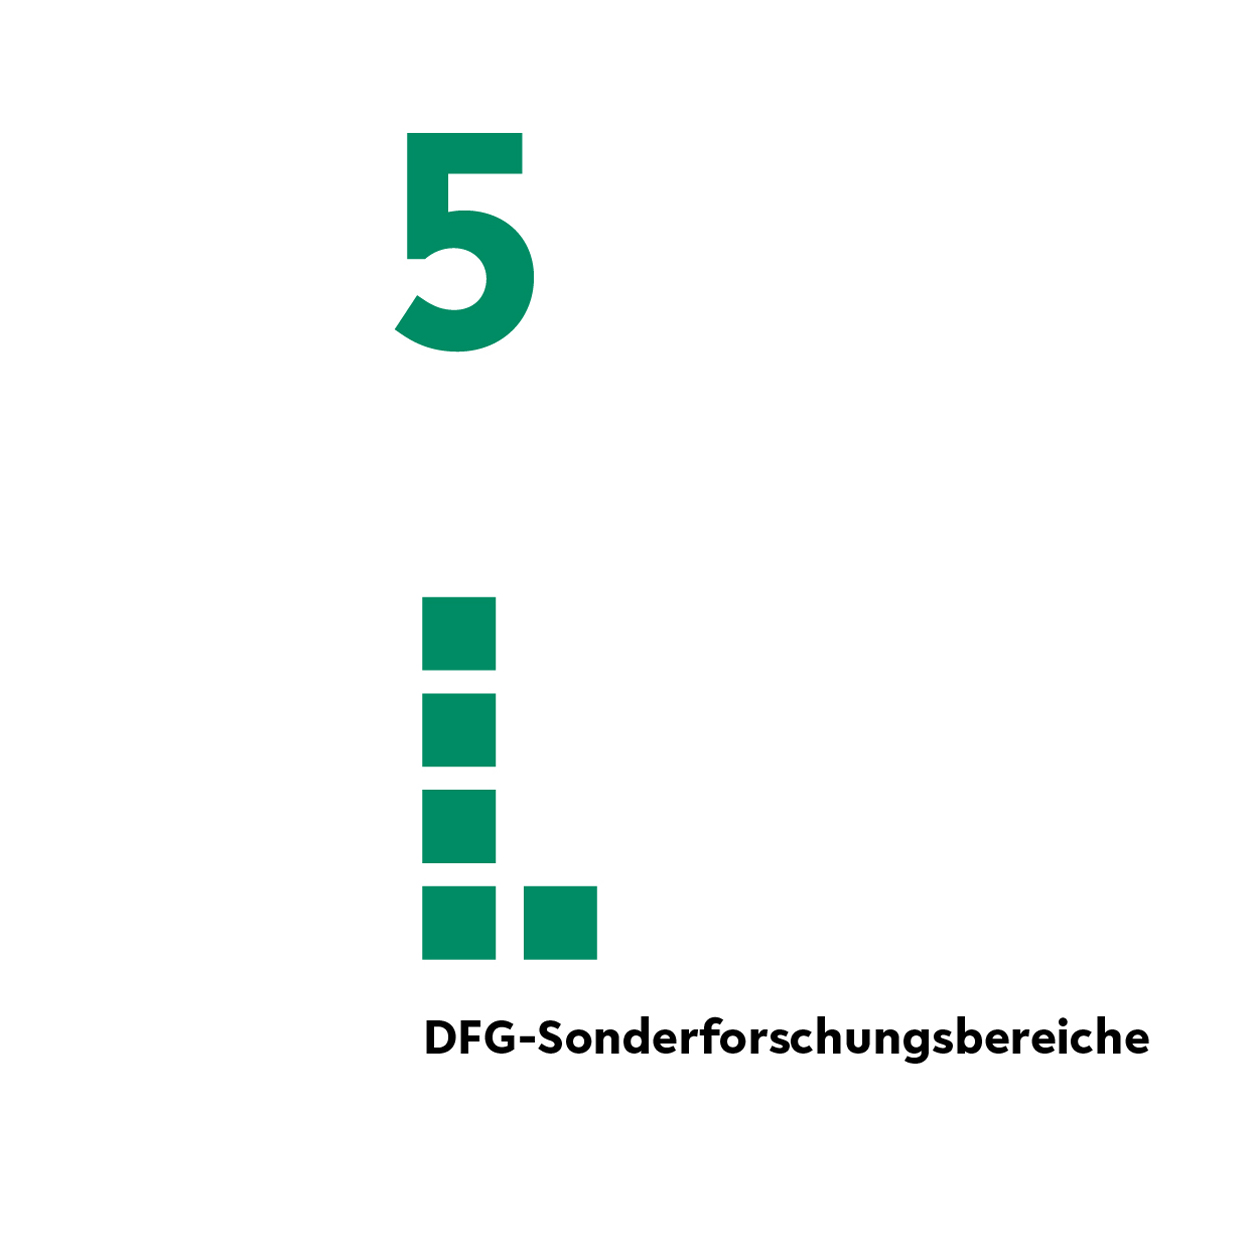 6 DFG-Sonderforschungsbereiche und eine Beteiligung in 2022. 